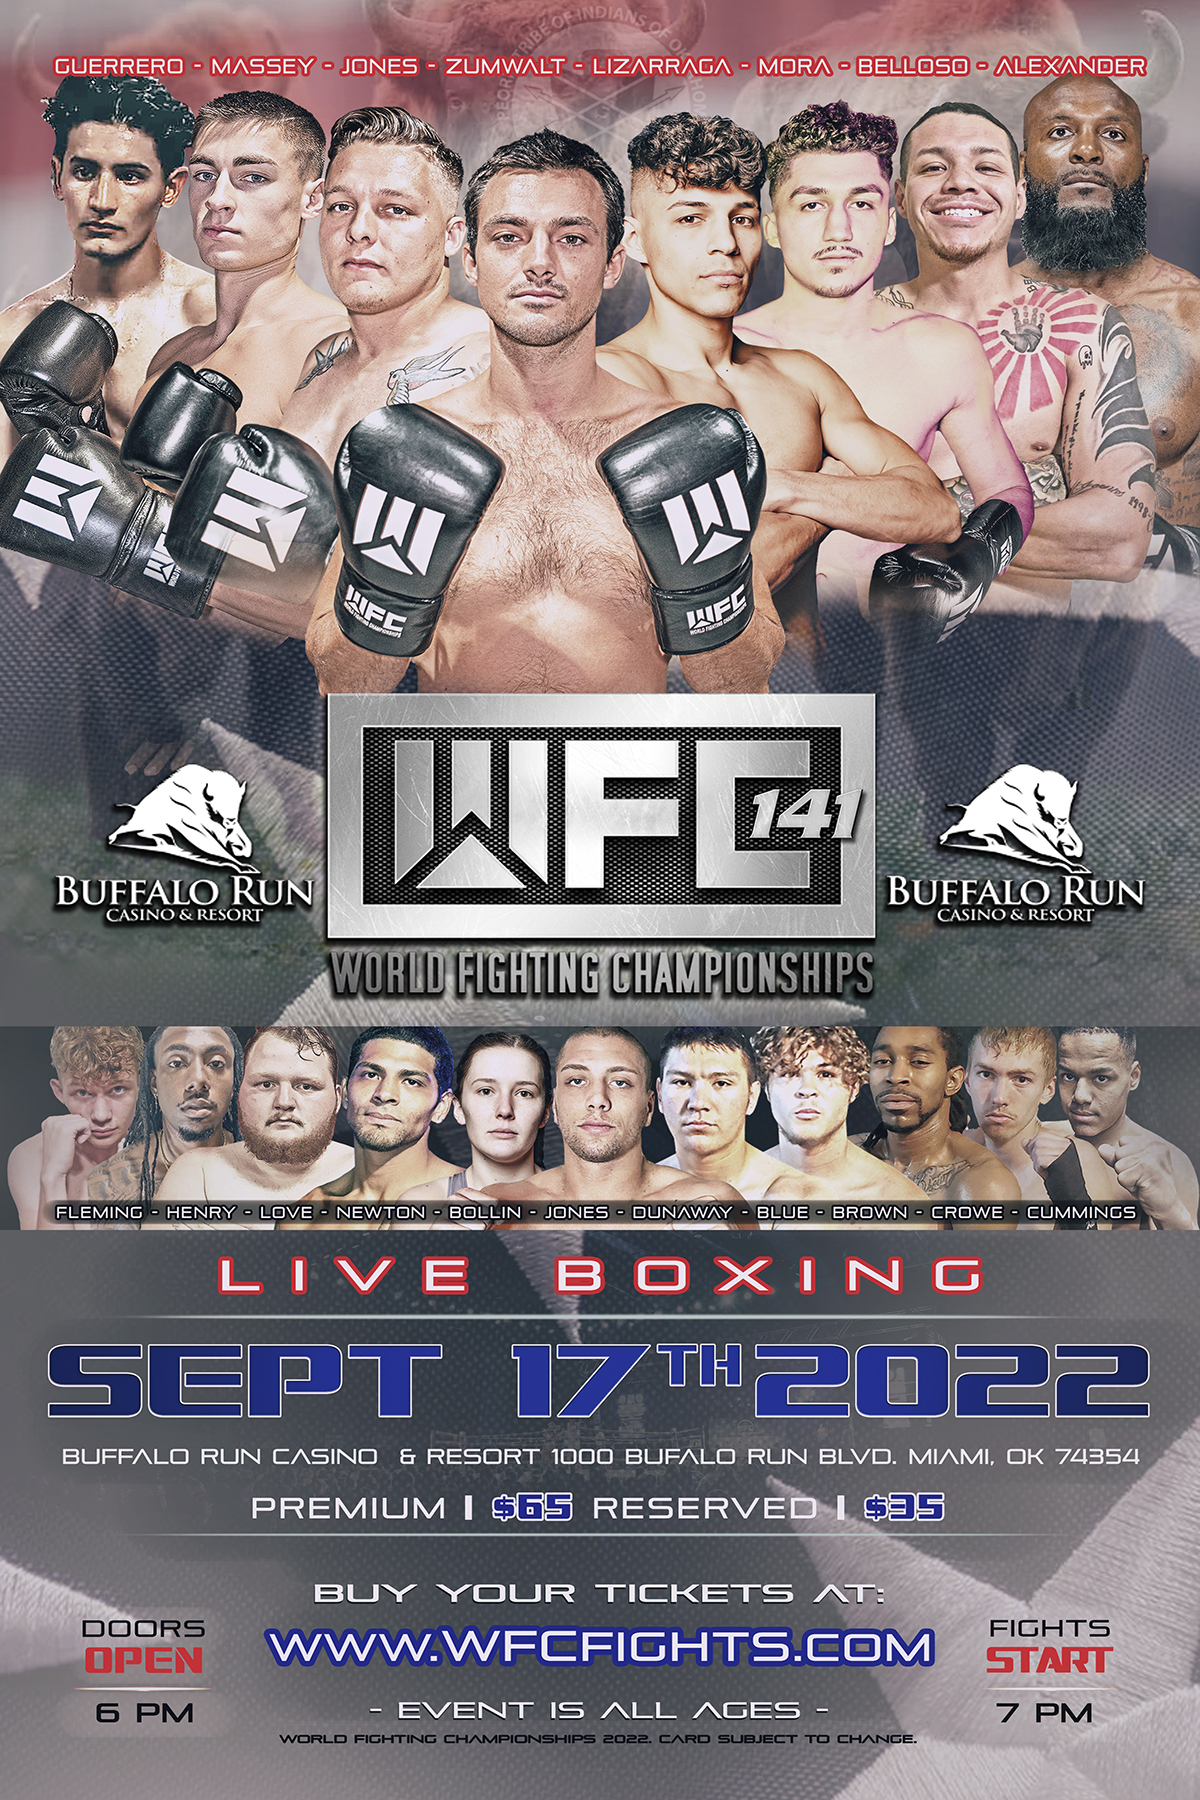 WFC 141 LIVE BOXING Saturday September 17,2022 at Buffalo Run Casino